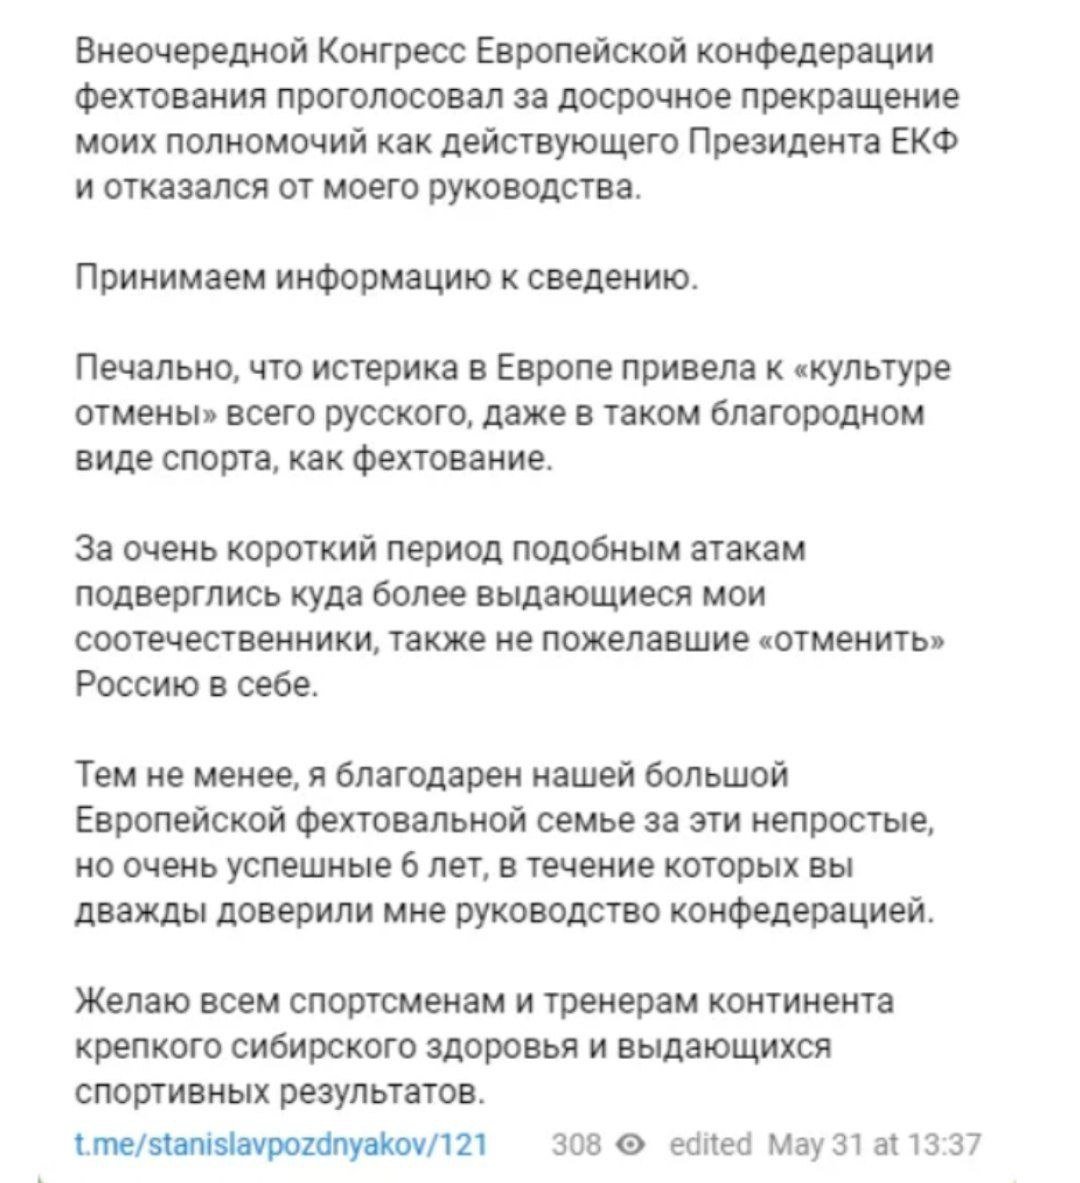 "Травля всего российского", - Поздняков раскритиковал решение комиссии о своем увольнении